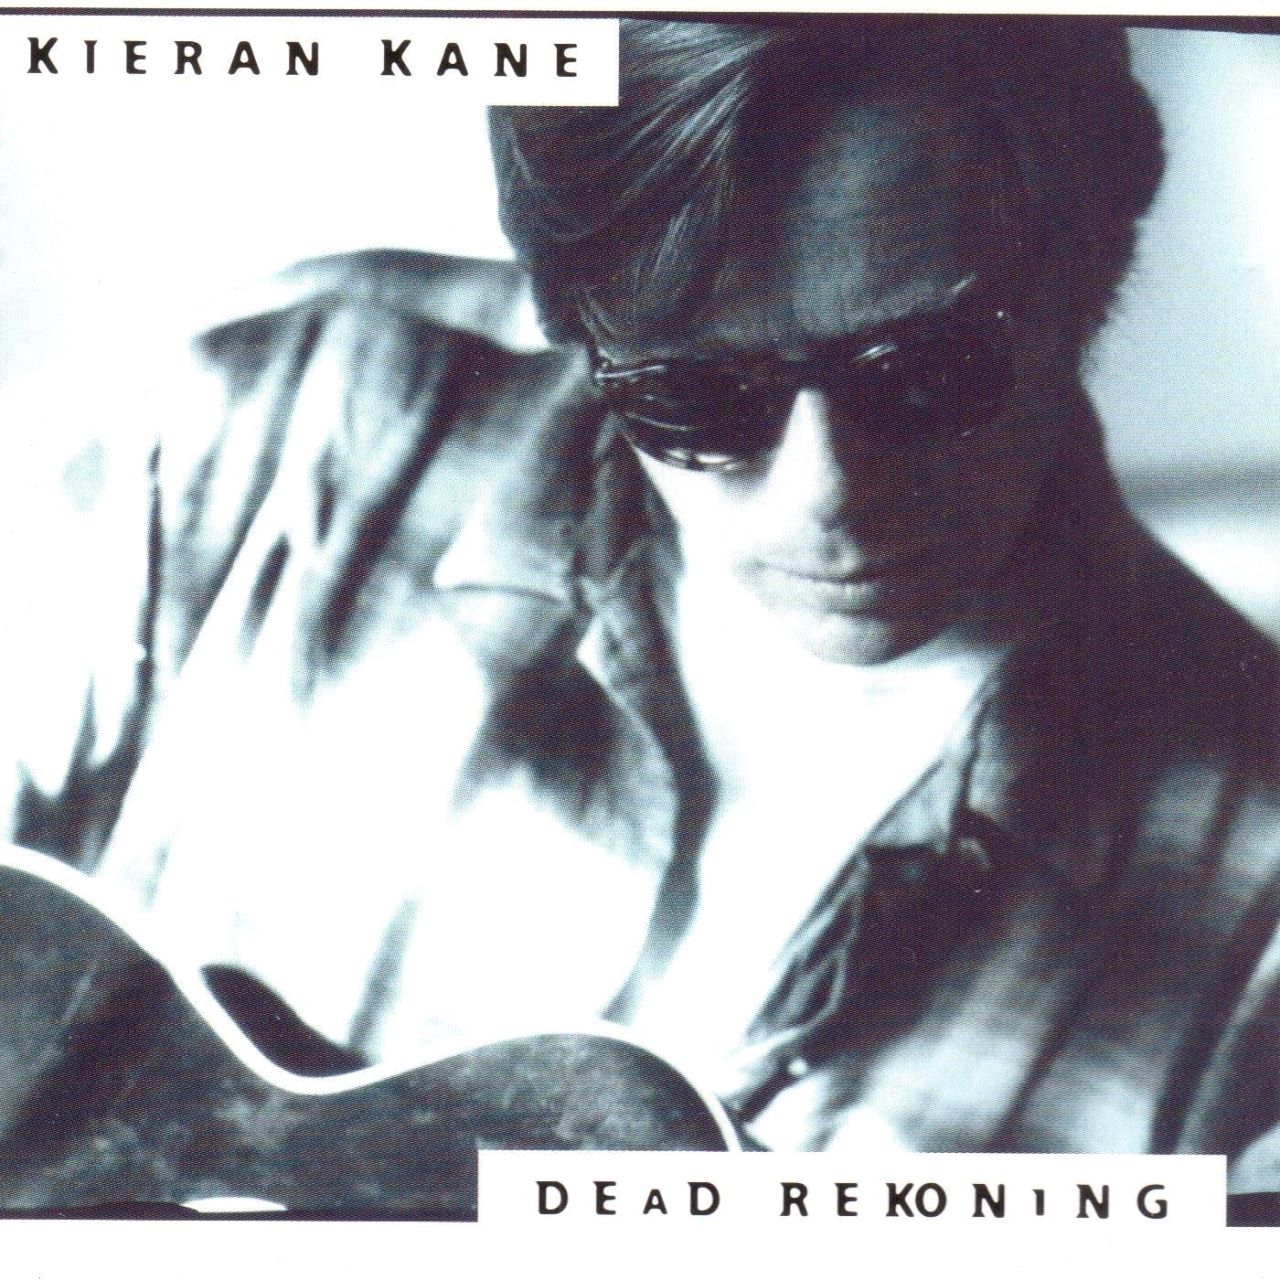 Kieran Kane - Dead Rekoning cover album